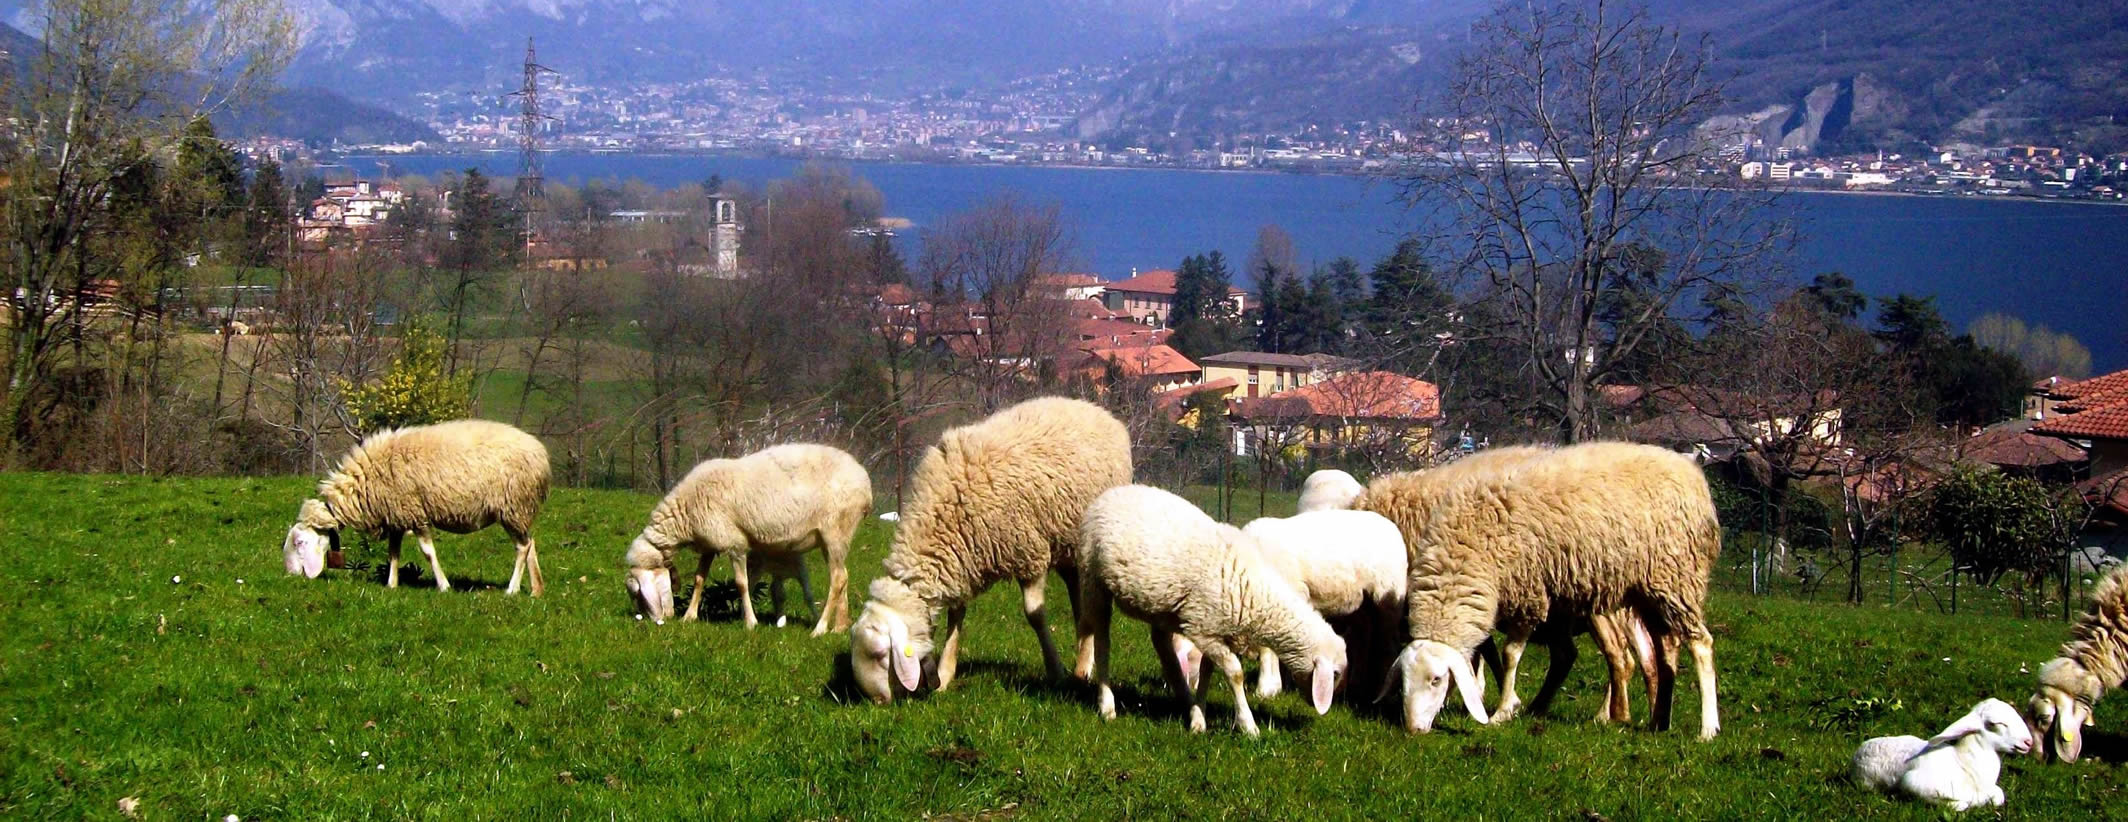 Pecore di razza brianzola al pascolo in località Guzzafame e Ronco a Garlate - foto di Pasquale Redaelli